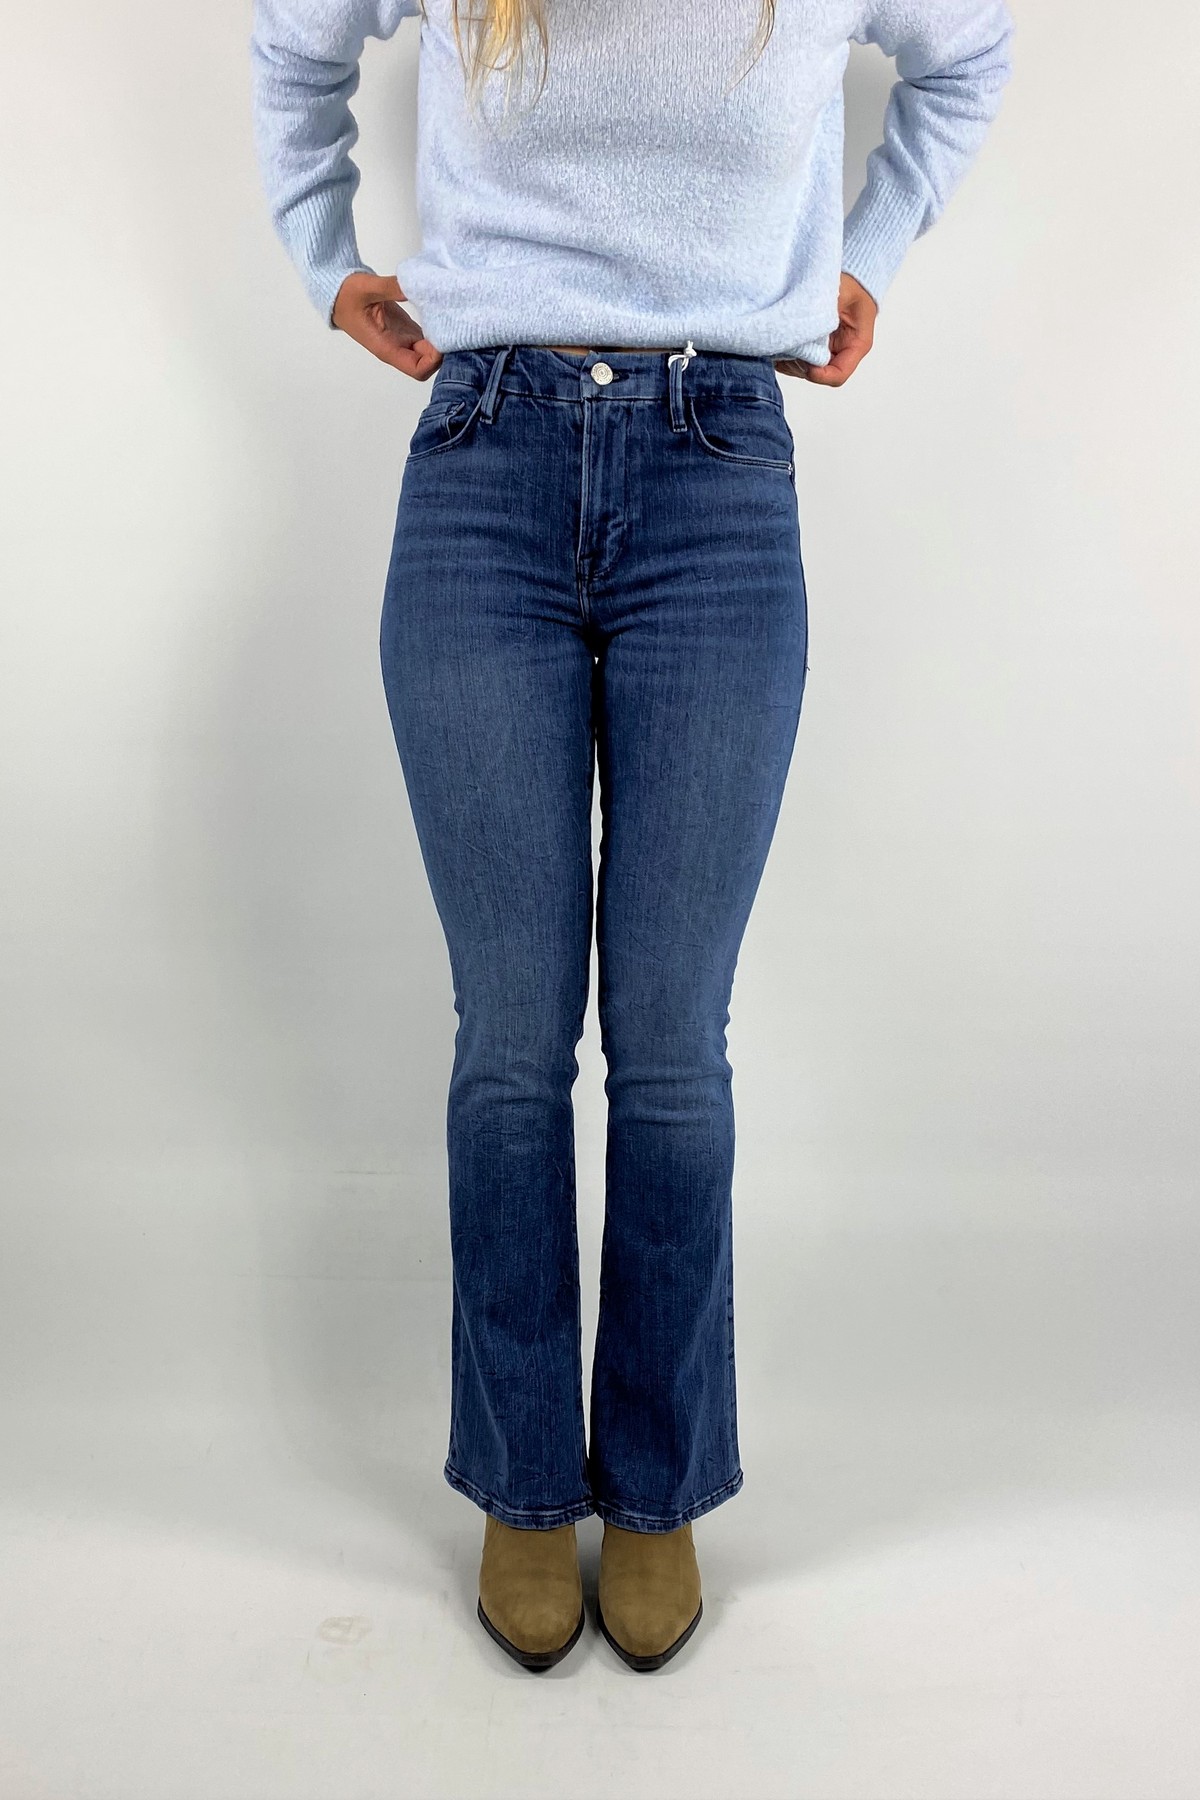 Jeans le miniboot met split in de kleur mediumblue van het merk Frame